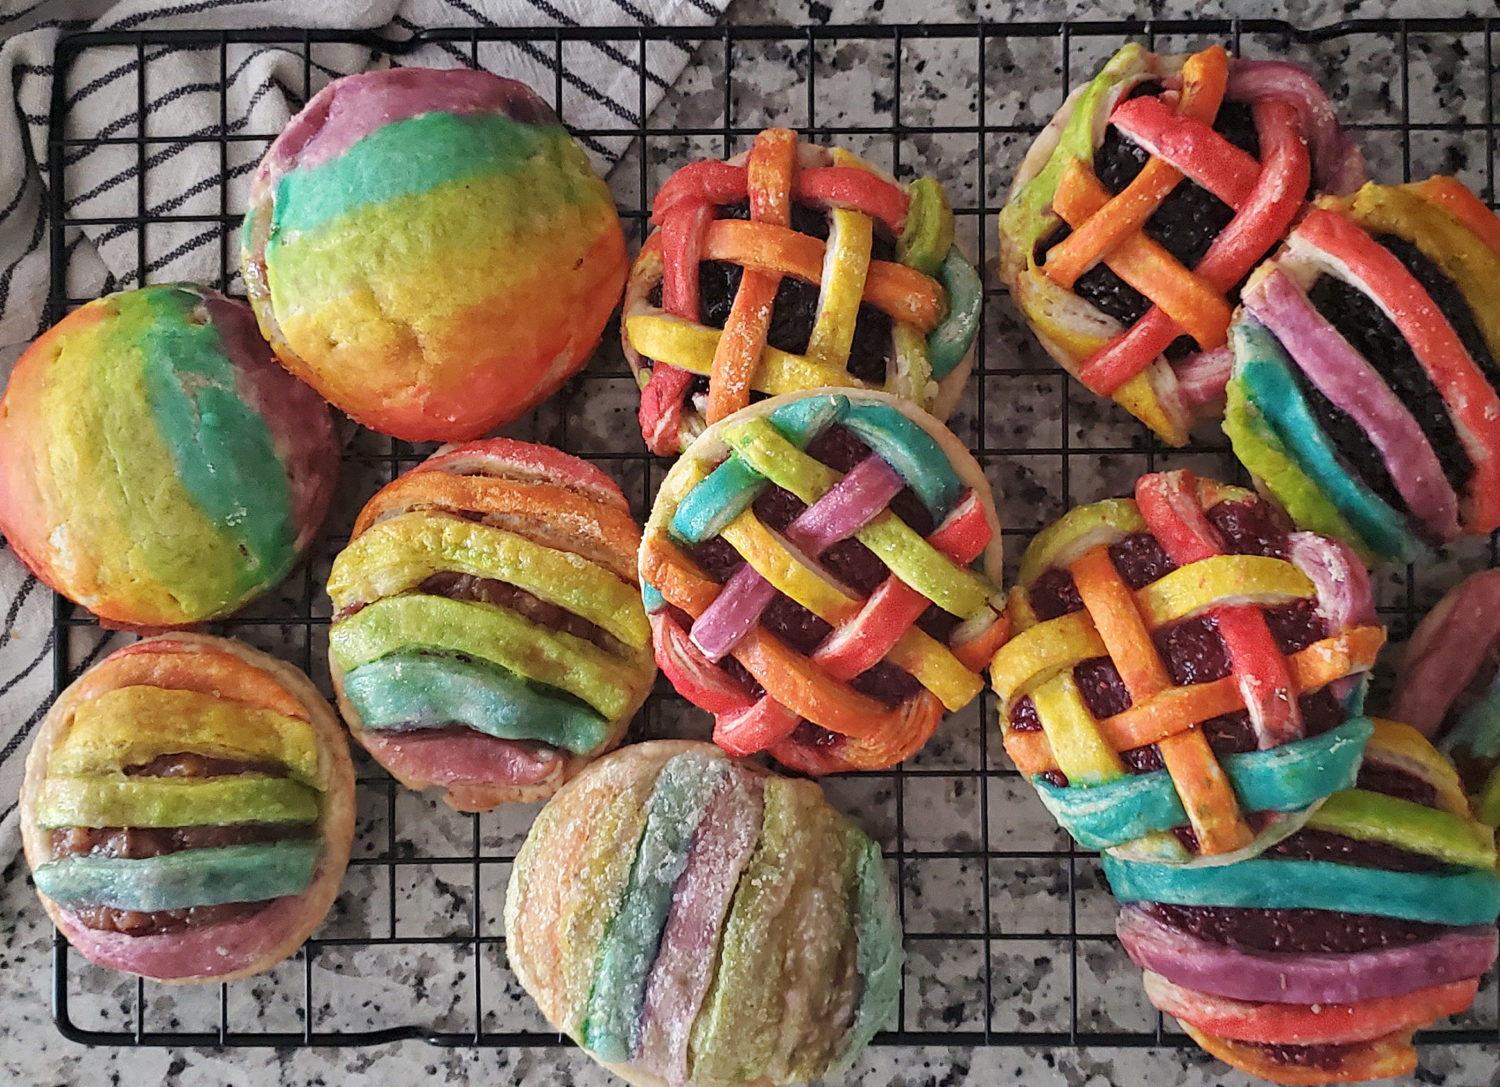 Proslavite svoju ljubav i ponos uz Rainbow Hand Pies, voćni nadjev po vašem izboru, zabava i kreativnost u kuhinji čekaju!